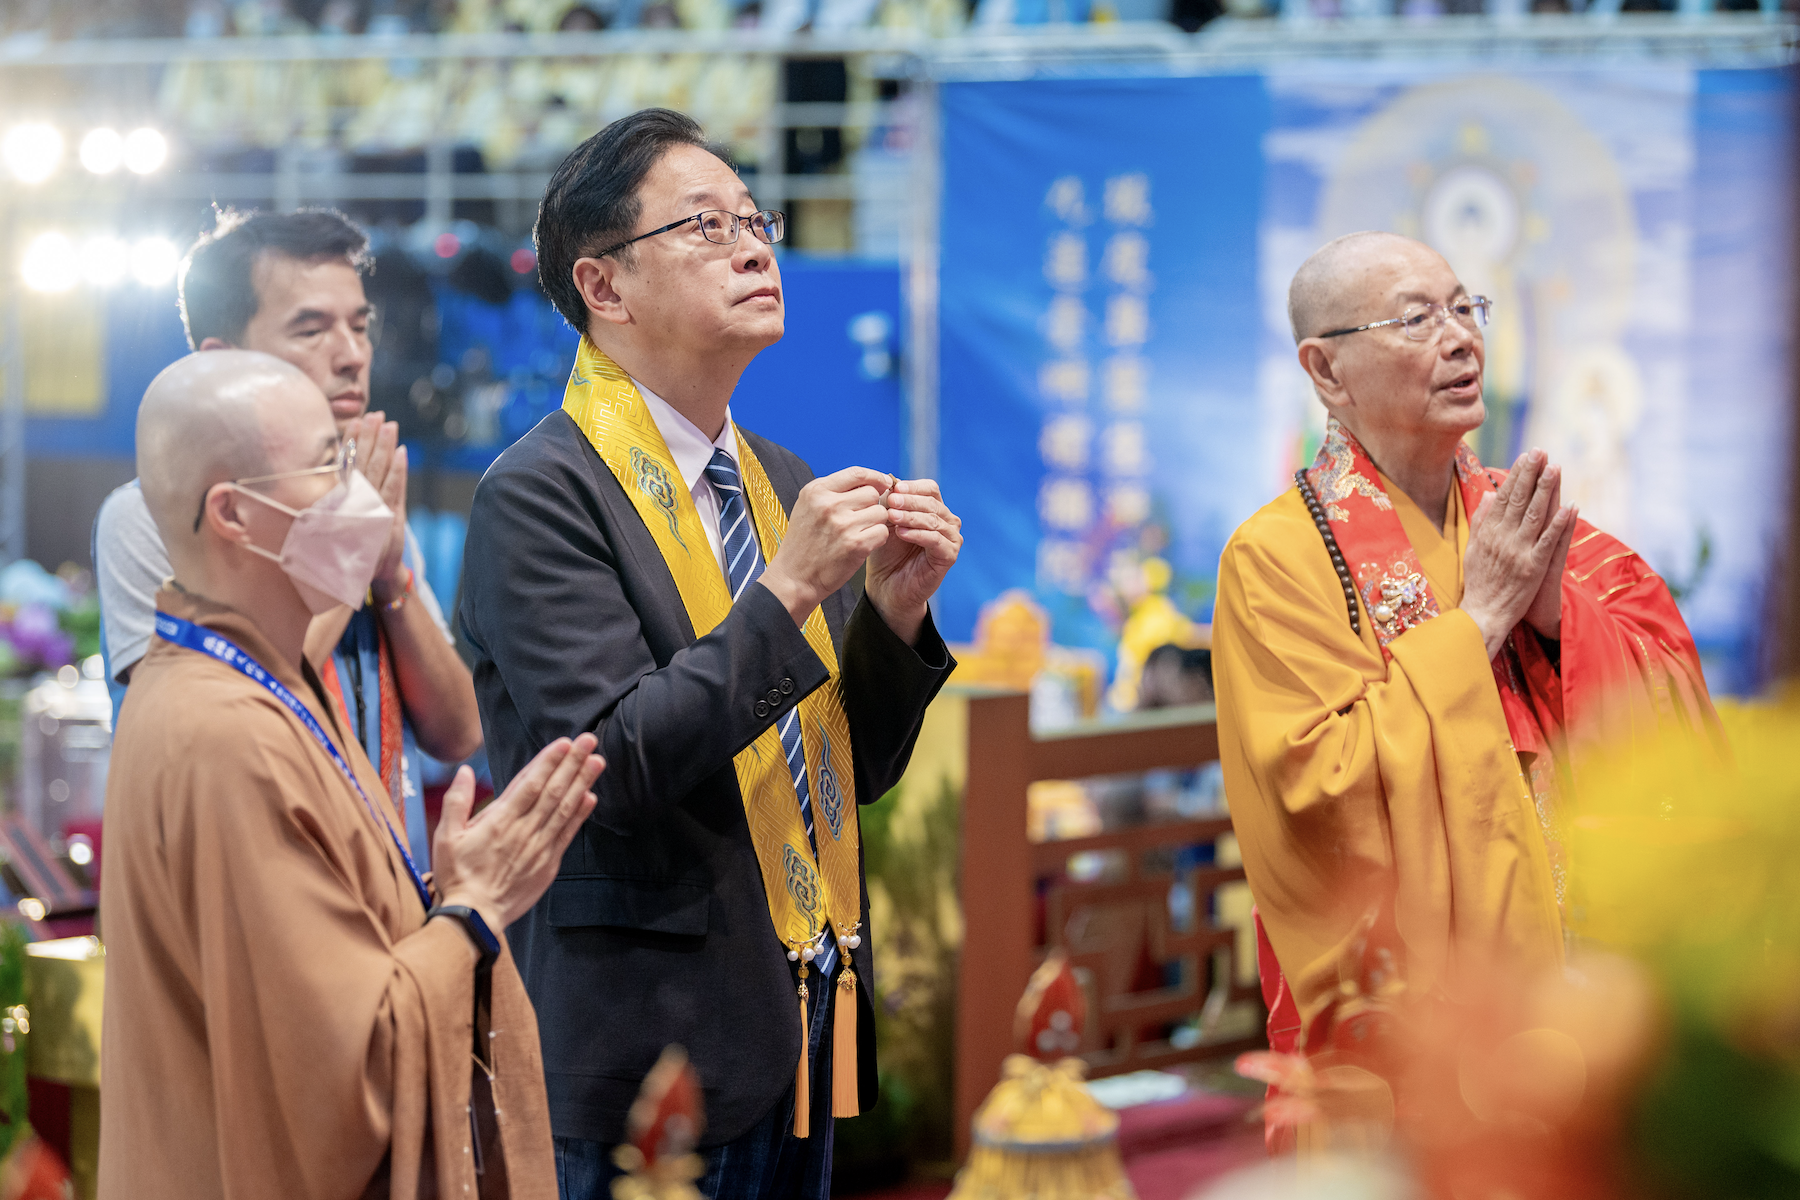 張善政參加新北慈法禪寺藥師佛文化節 為全球祈願和平安樂 - 早安台灣新聞 | Morning Taiwan News